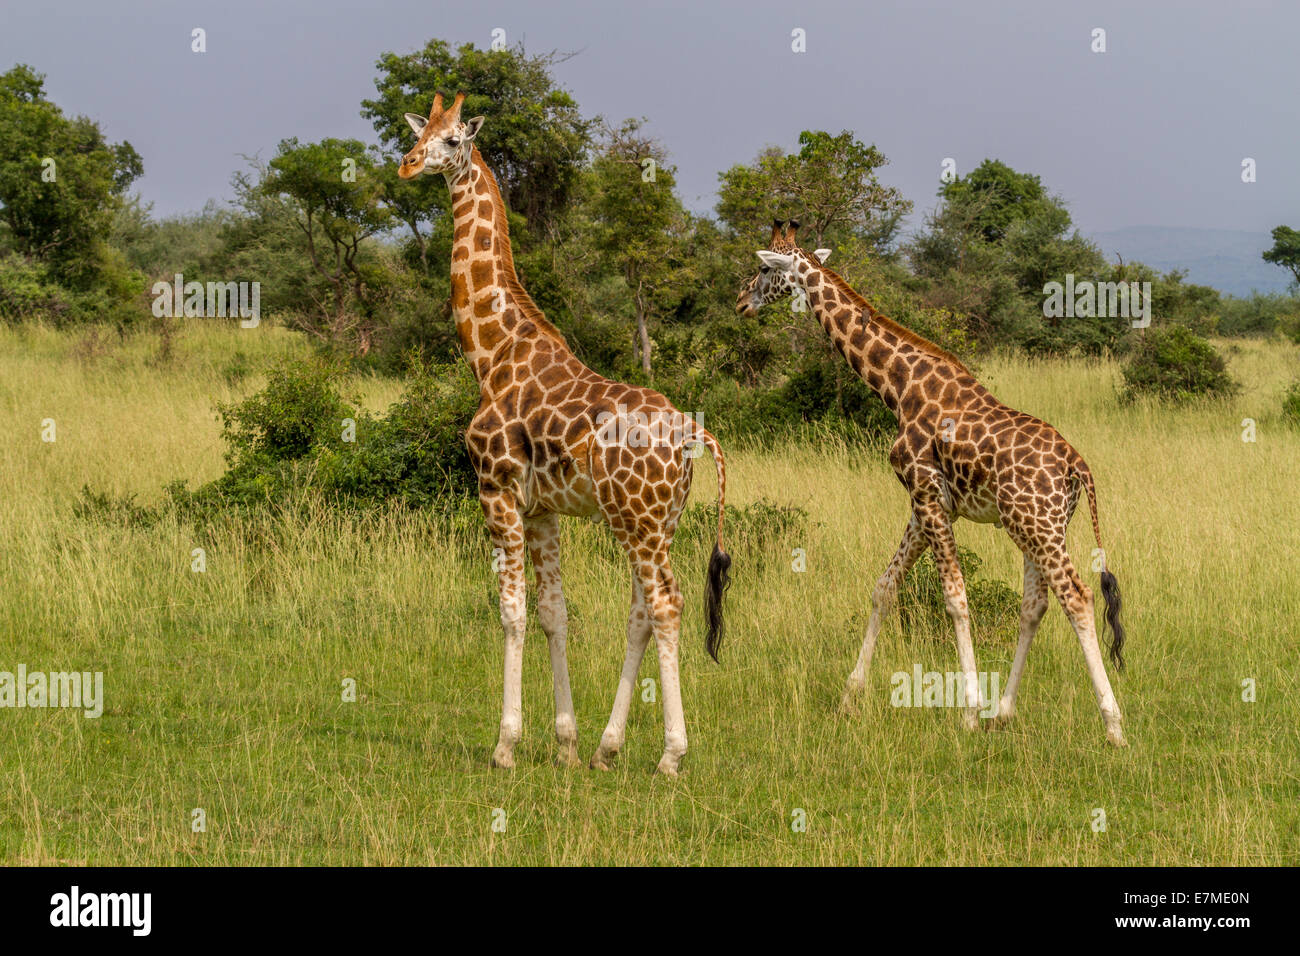 La girafe de Rothschild est l'une des plus menacées de sous-espèces de girafe. c'est aussi connu sous le nom de l'Ouganda ou girafe baringo Banque D'Images